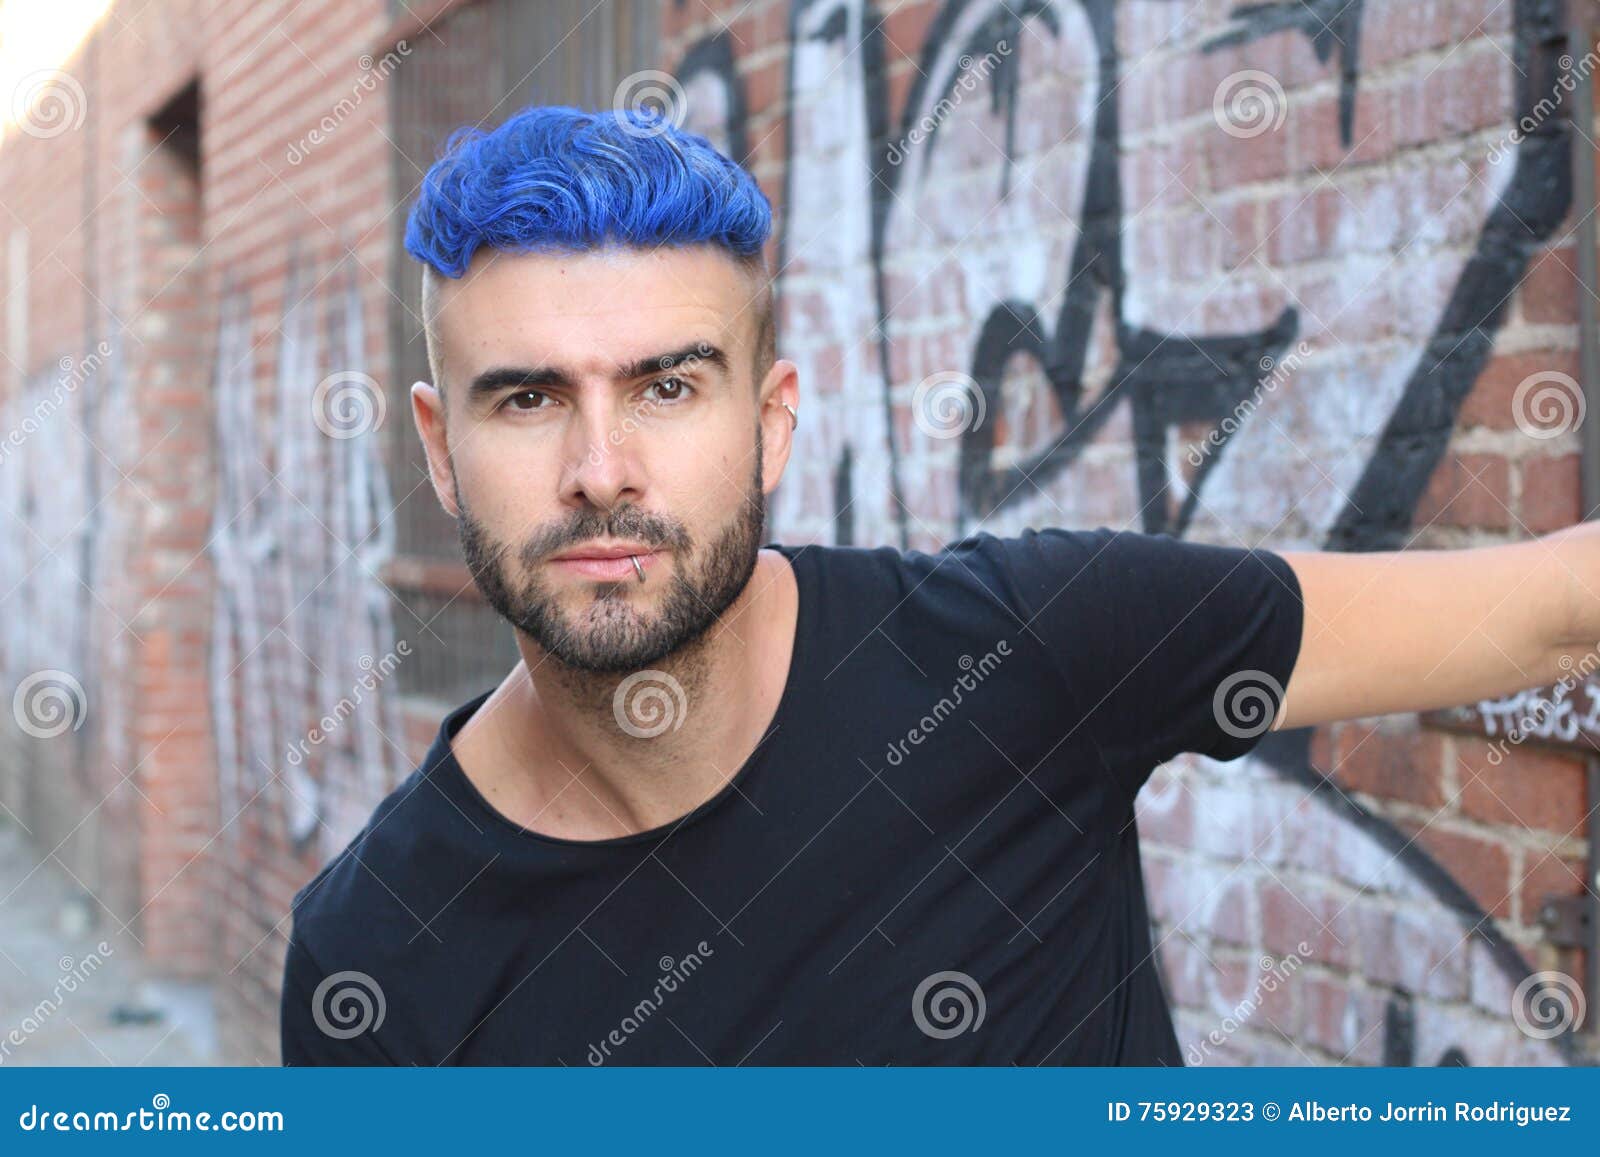 homens de cabelo azul